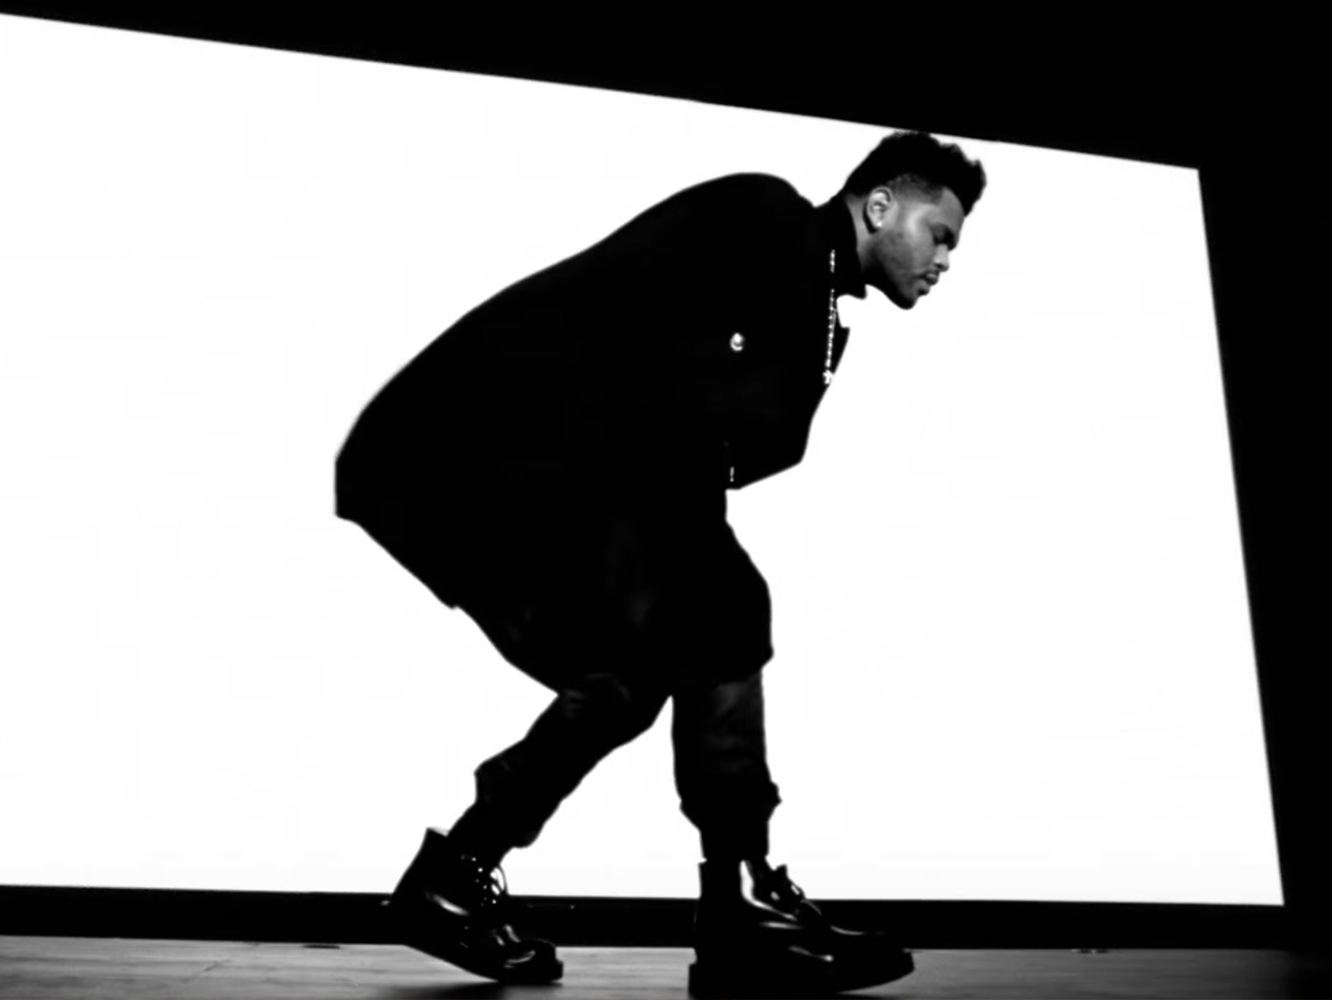  The Weeknd, bastante más directo en el vídeo de ‘Call Out My Name’